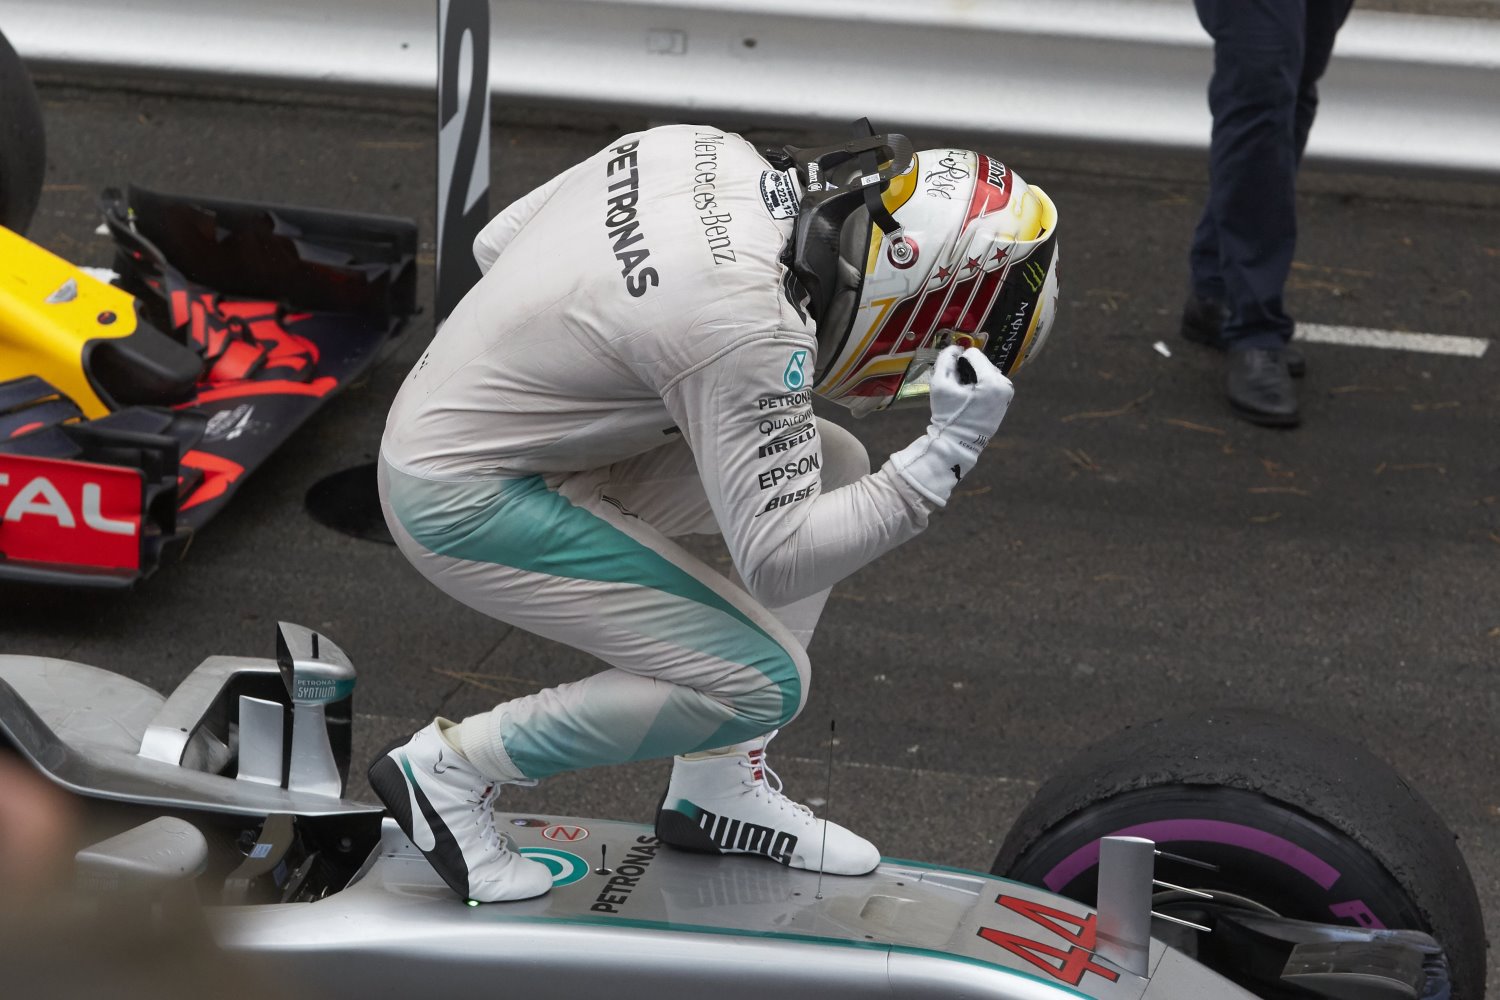 Hamilton celebrates the end of his winless streak